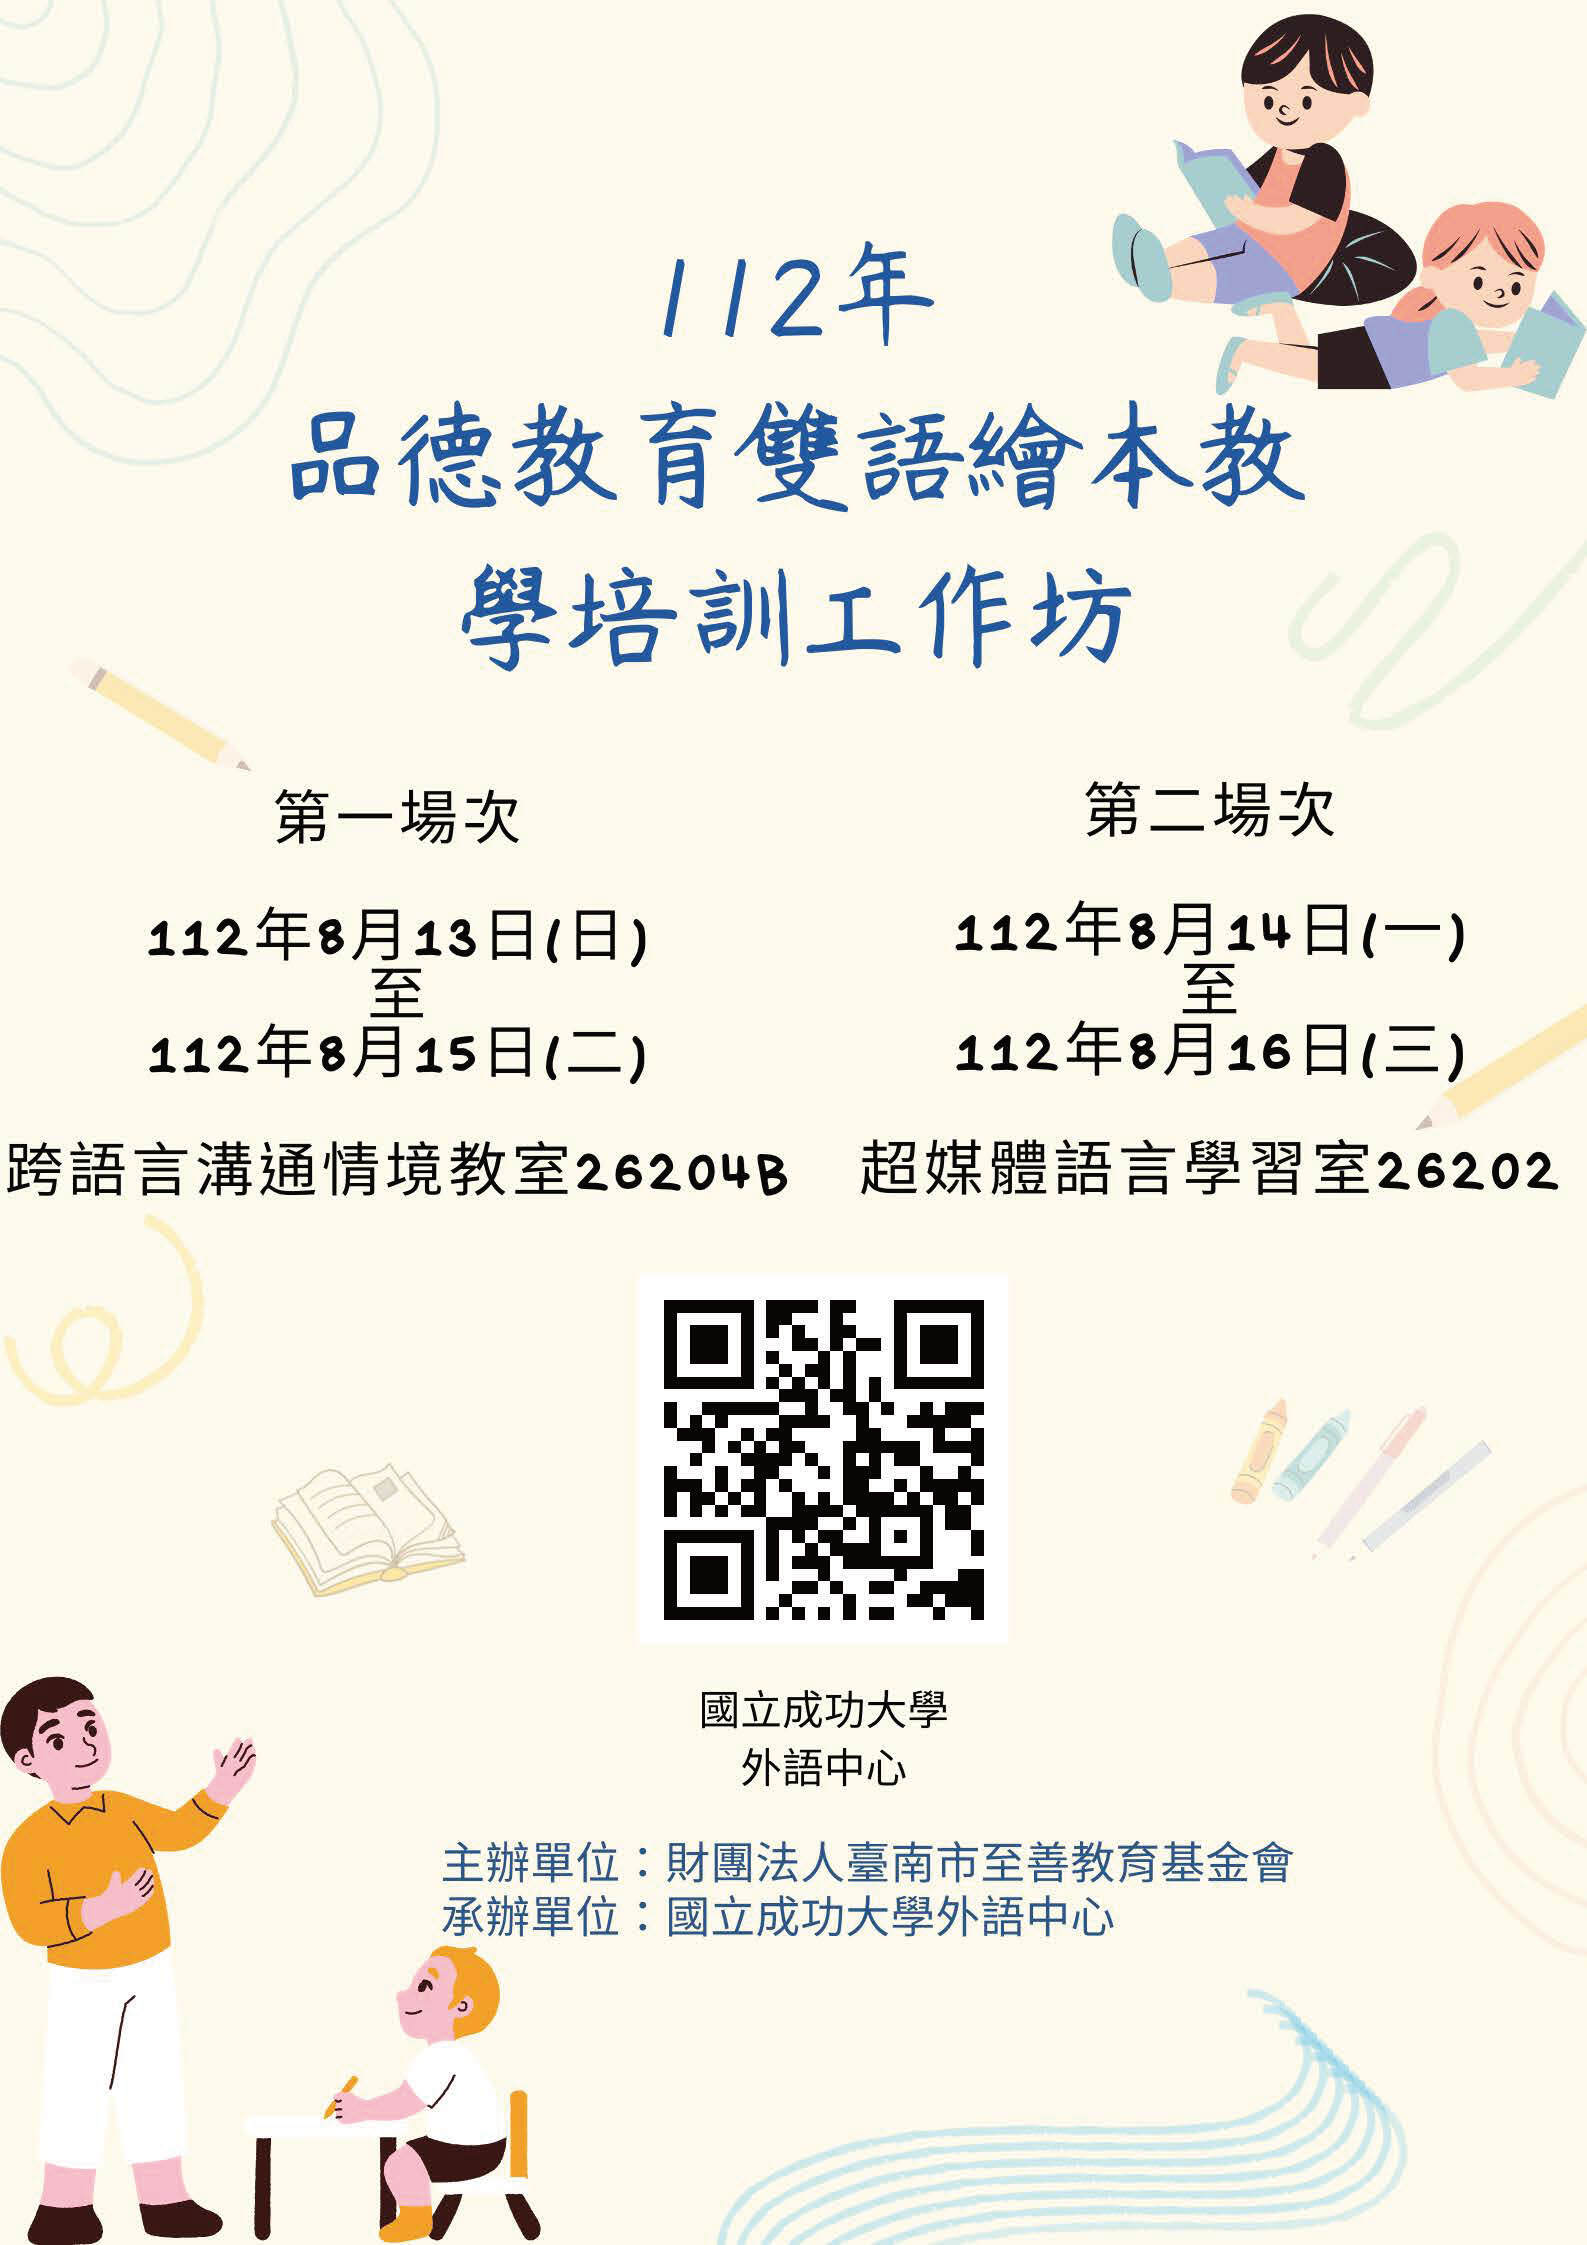 112年度台南市至善教育基金會委託國立成功大學外語中心承辦『品德教育雙語繪本教學師資培訓課程』